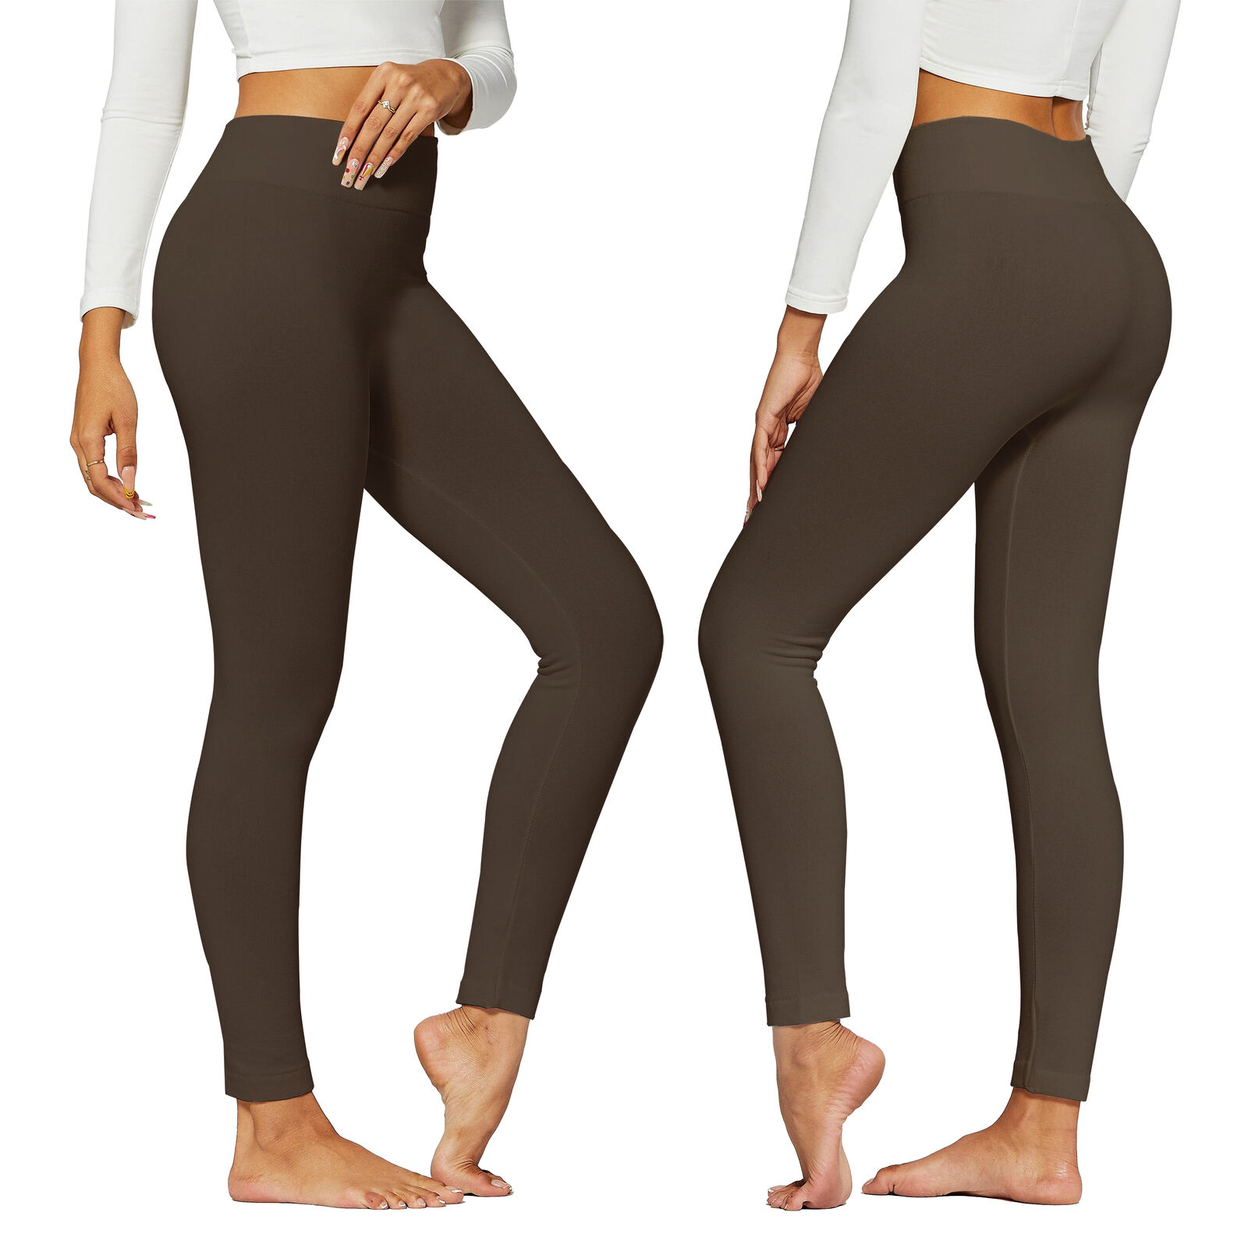 2-Pack: Women's Winter Warm High-Waist Soft Fleece Lined Leggings - Black & Brown, 1X